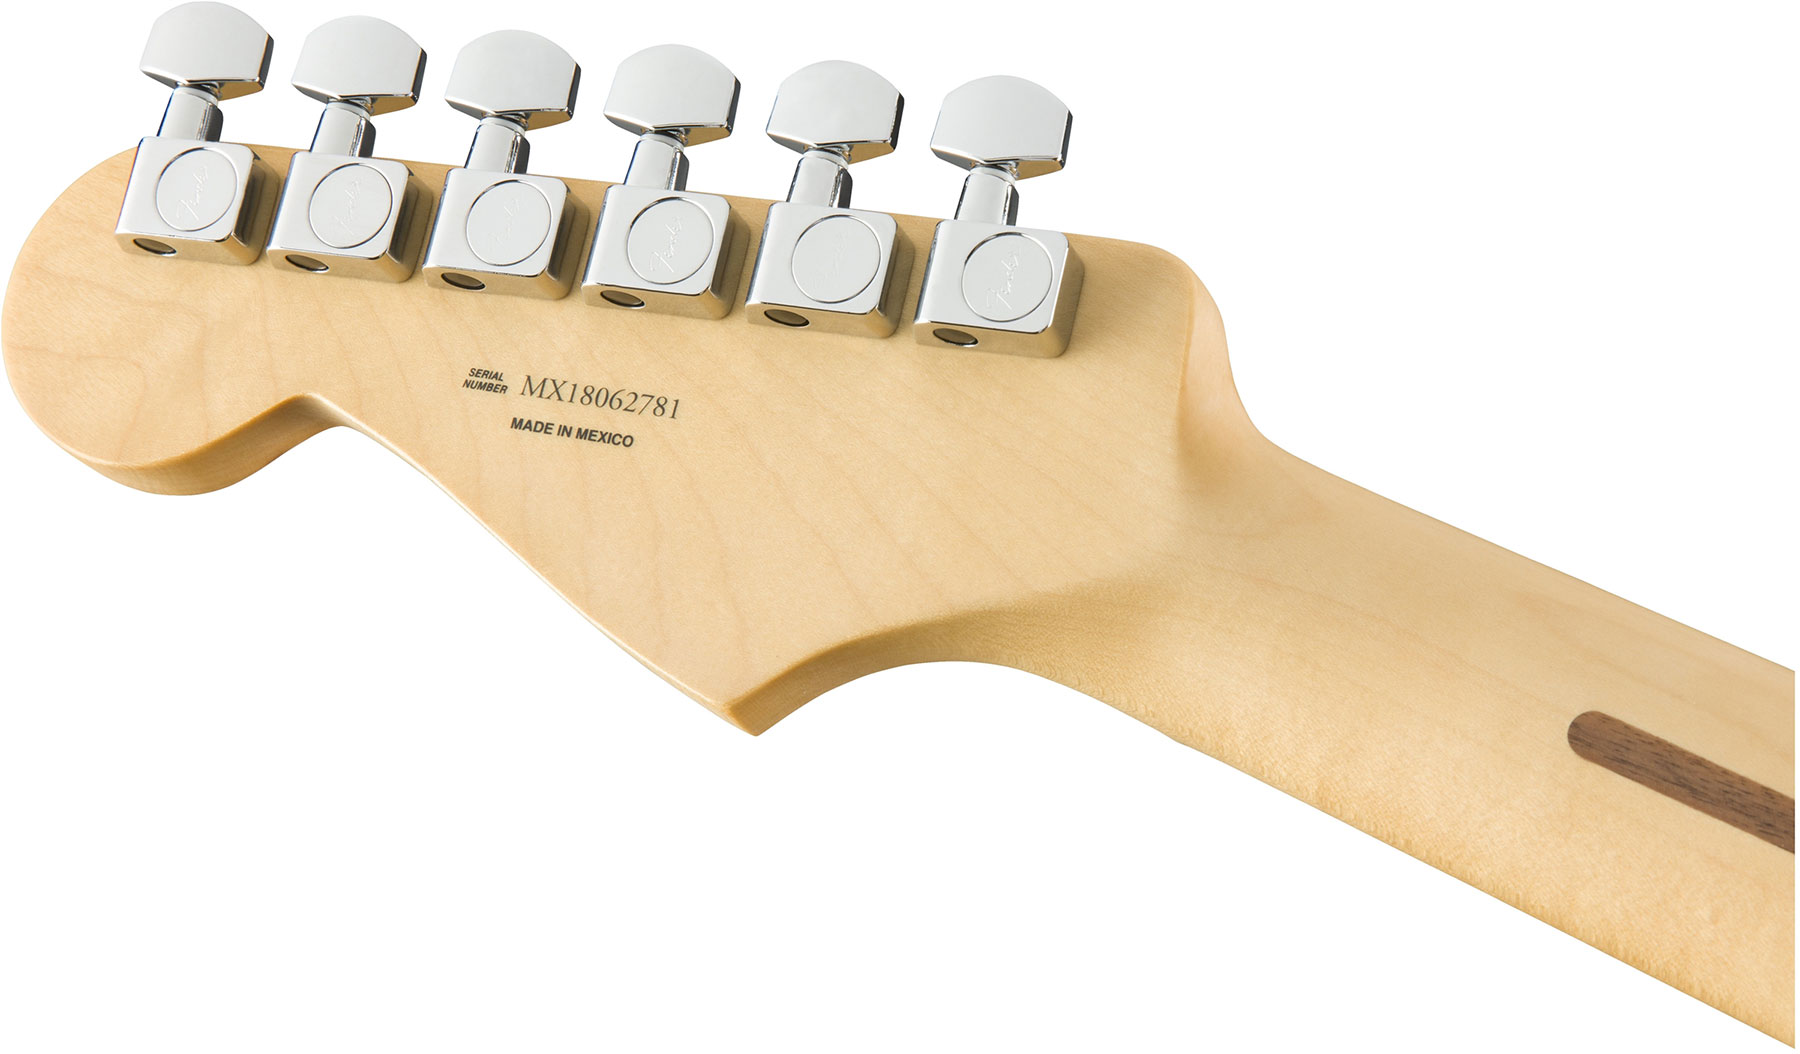 Fender Strat Player Mex Sss Pf - 3-color Sunburst - Str shape electric guitar - Variation 3